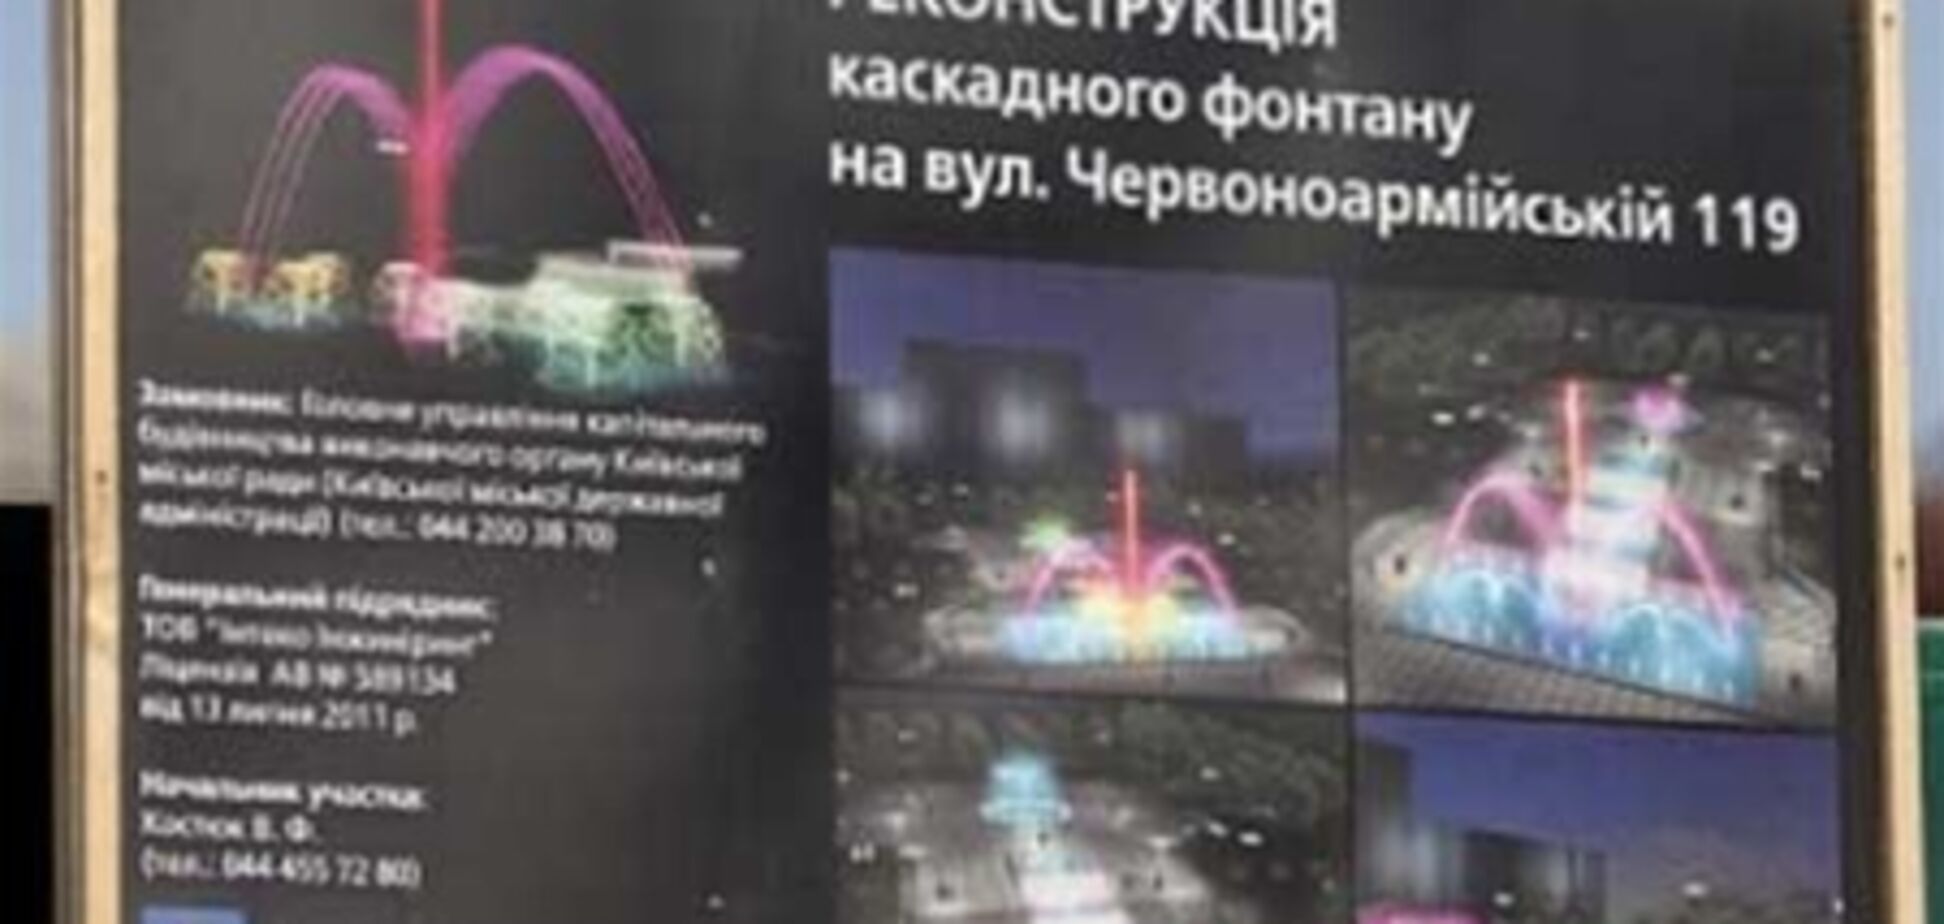 Накануне Евро-2012 в центре Киева запустят 'поющий' фонтан